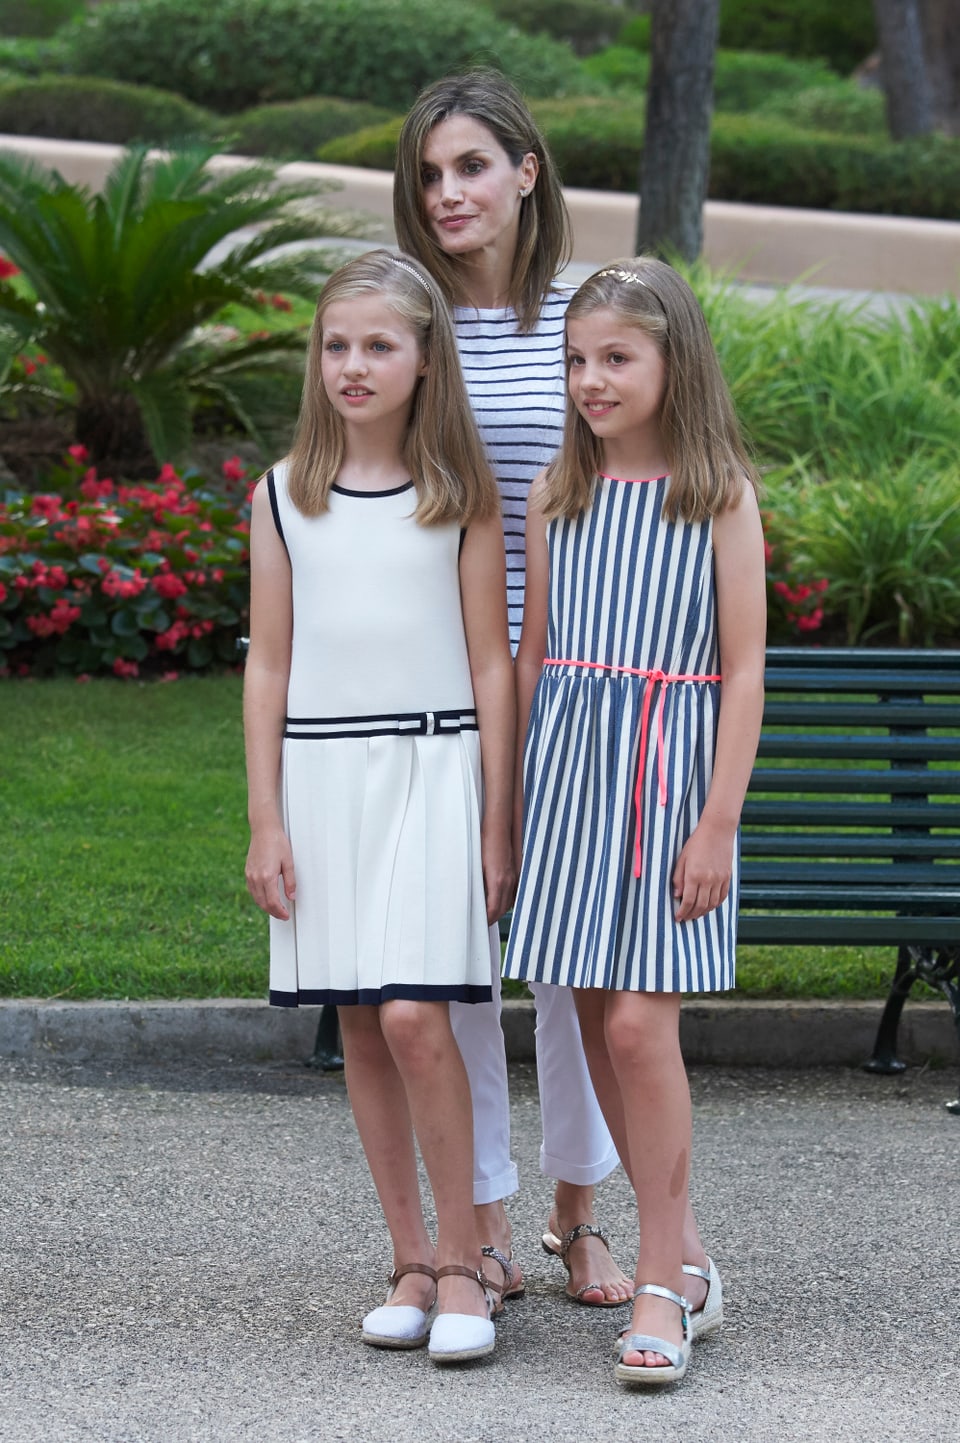 Königin Letizia steht mit ihren Töchtern im Garten.